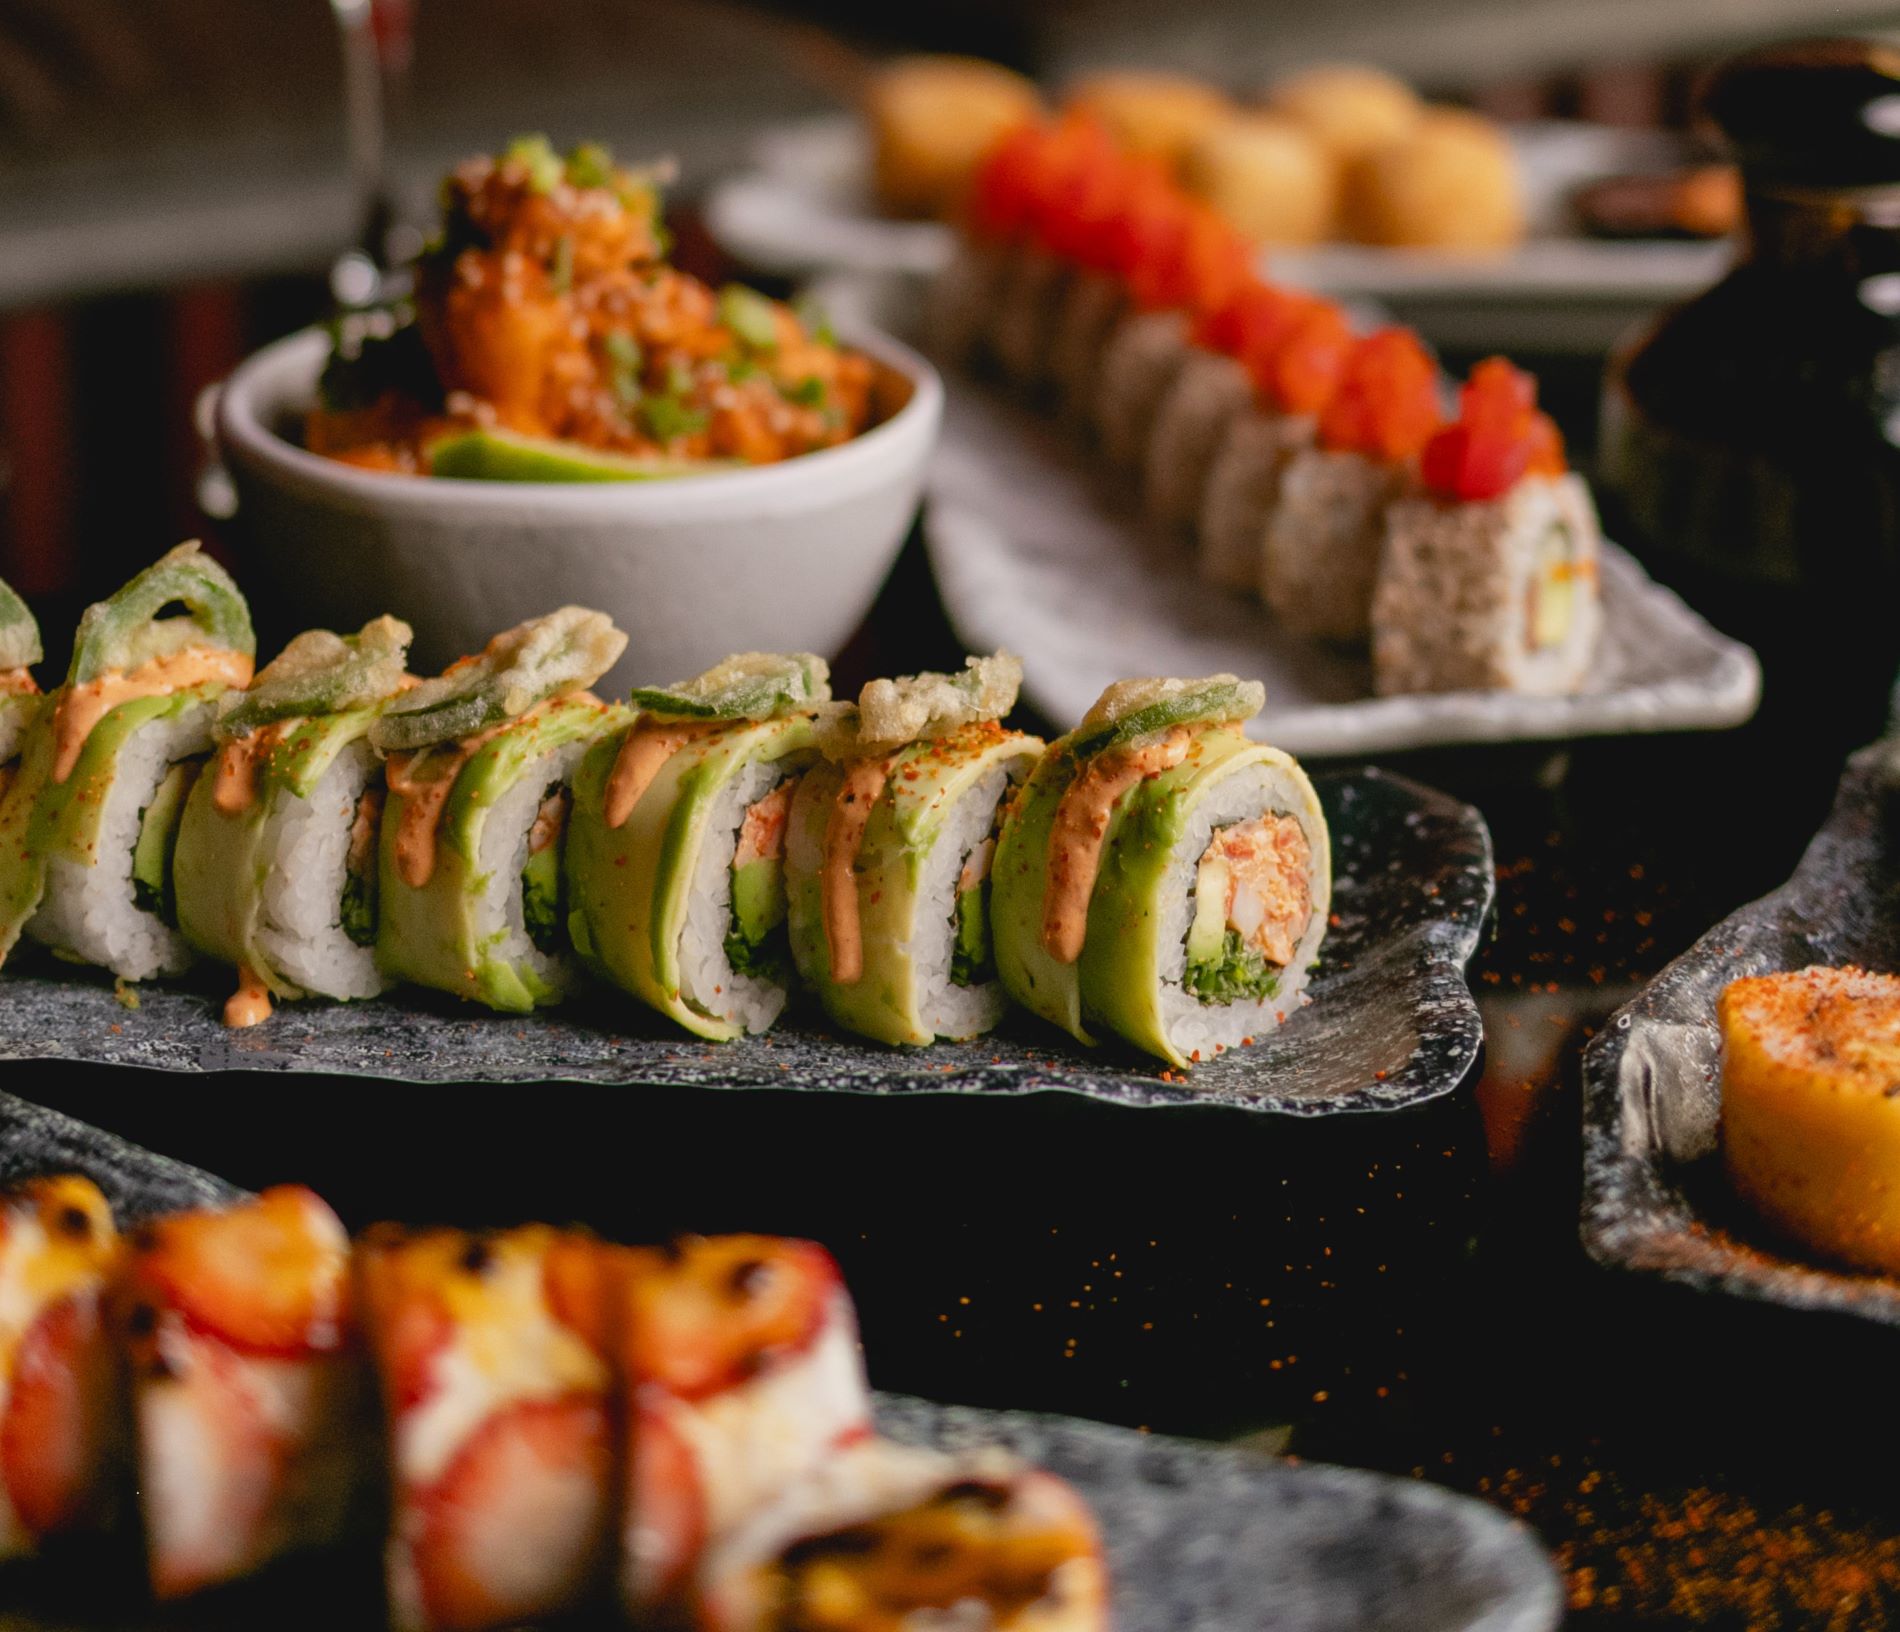 NIU Sushi: oferta gastronómica con sabor y calidad llega a México